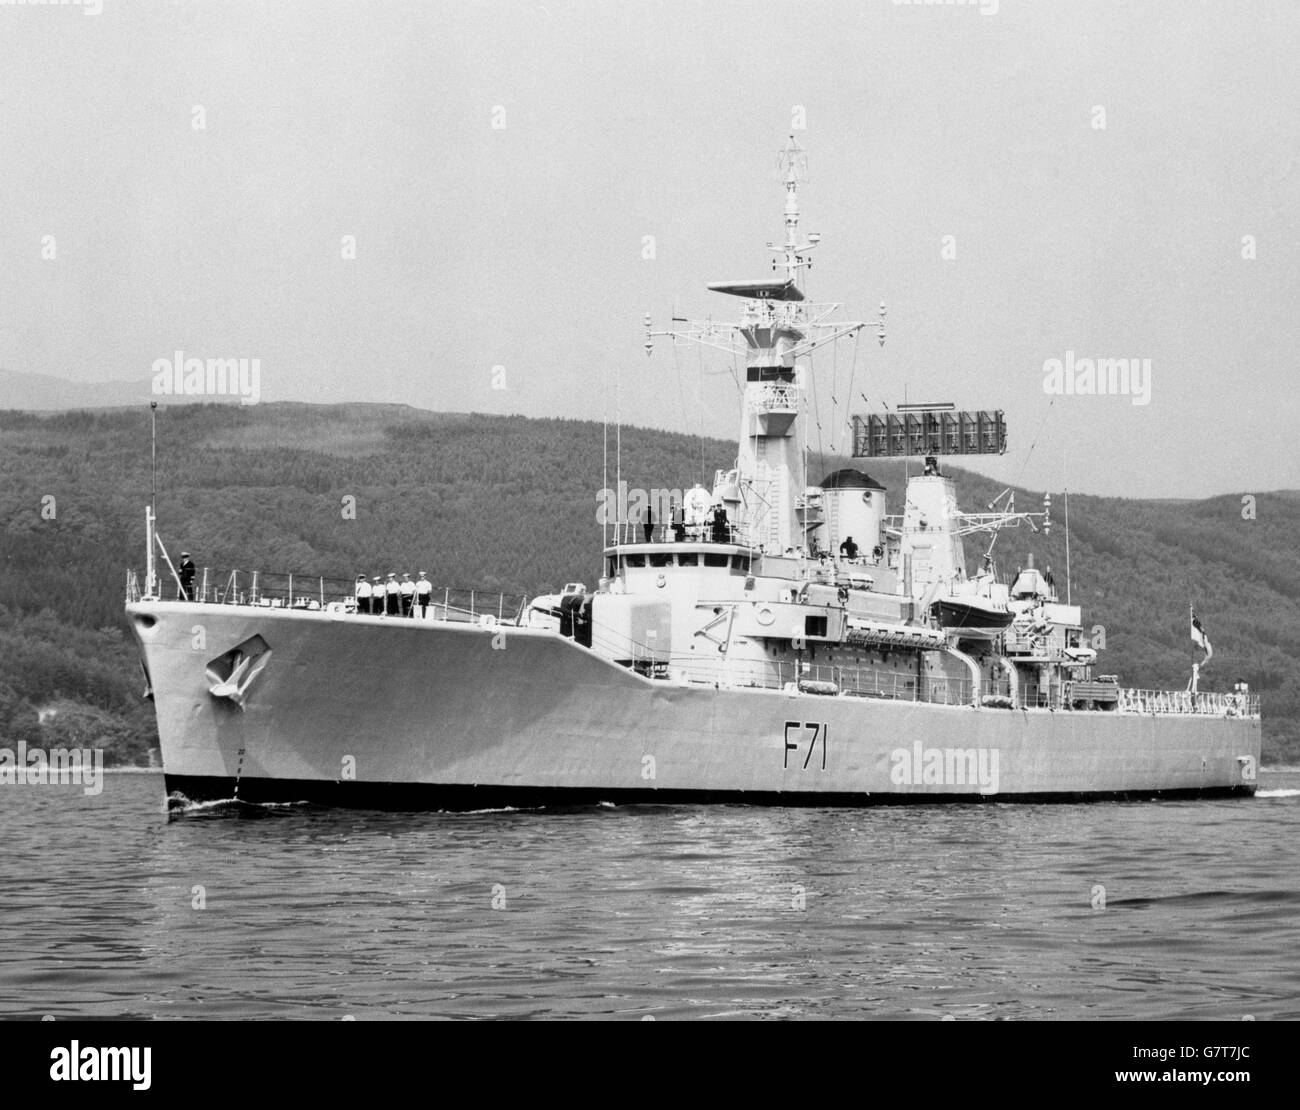 HMS Scylla (F71), frégate de classe Leander de la Marine royale. Elle a été construite à l'arsenal royal de Devonport. Lancé en 1968 et mis en service en 1970. Banque D'Images